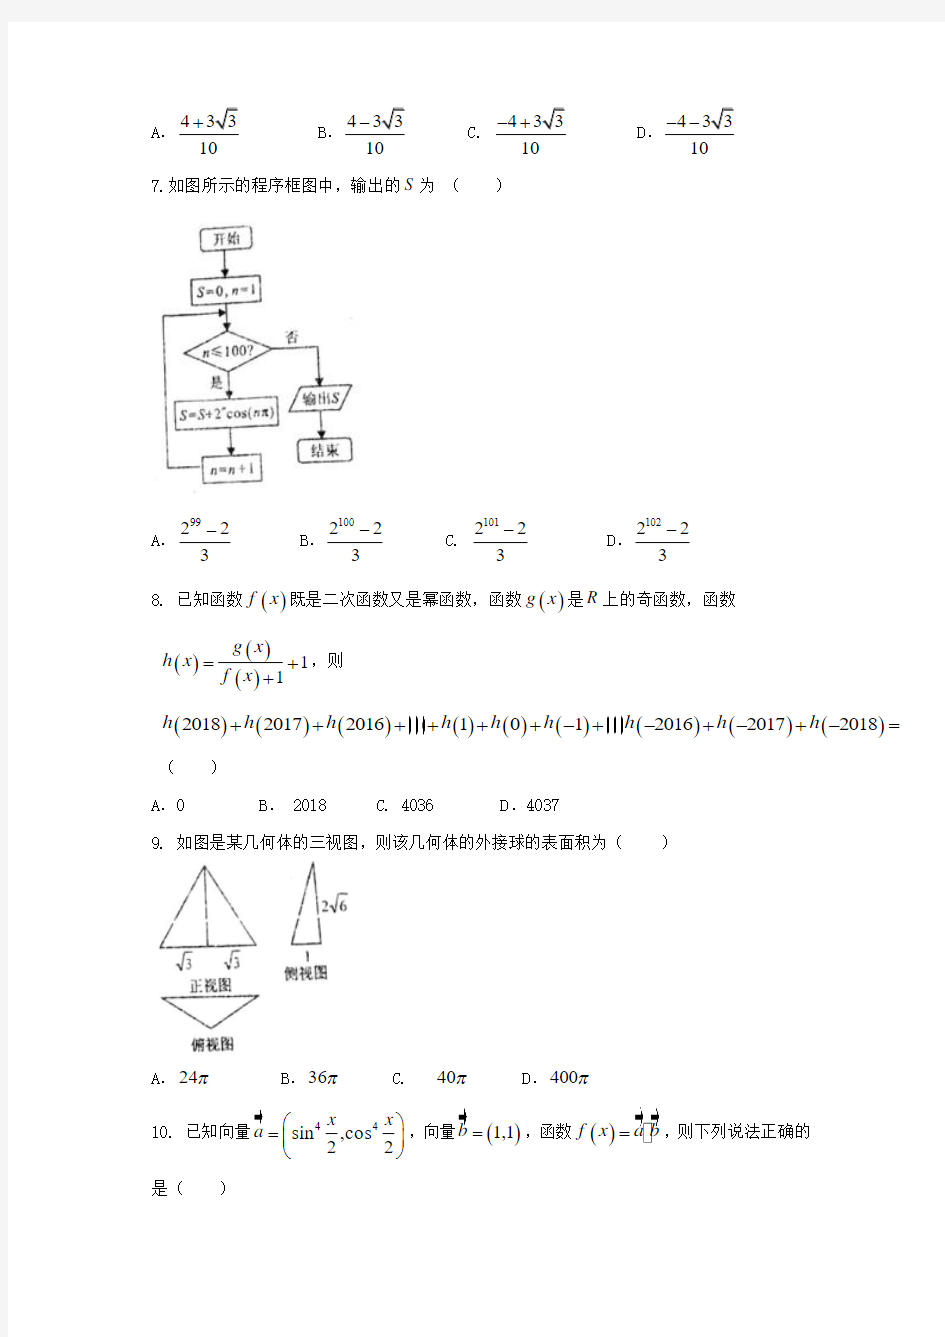 2019-2020学年高三数学下学期第一次模拟考试试题理(IV).doc